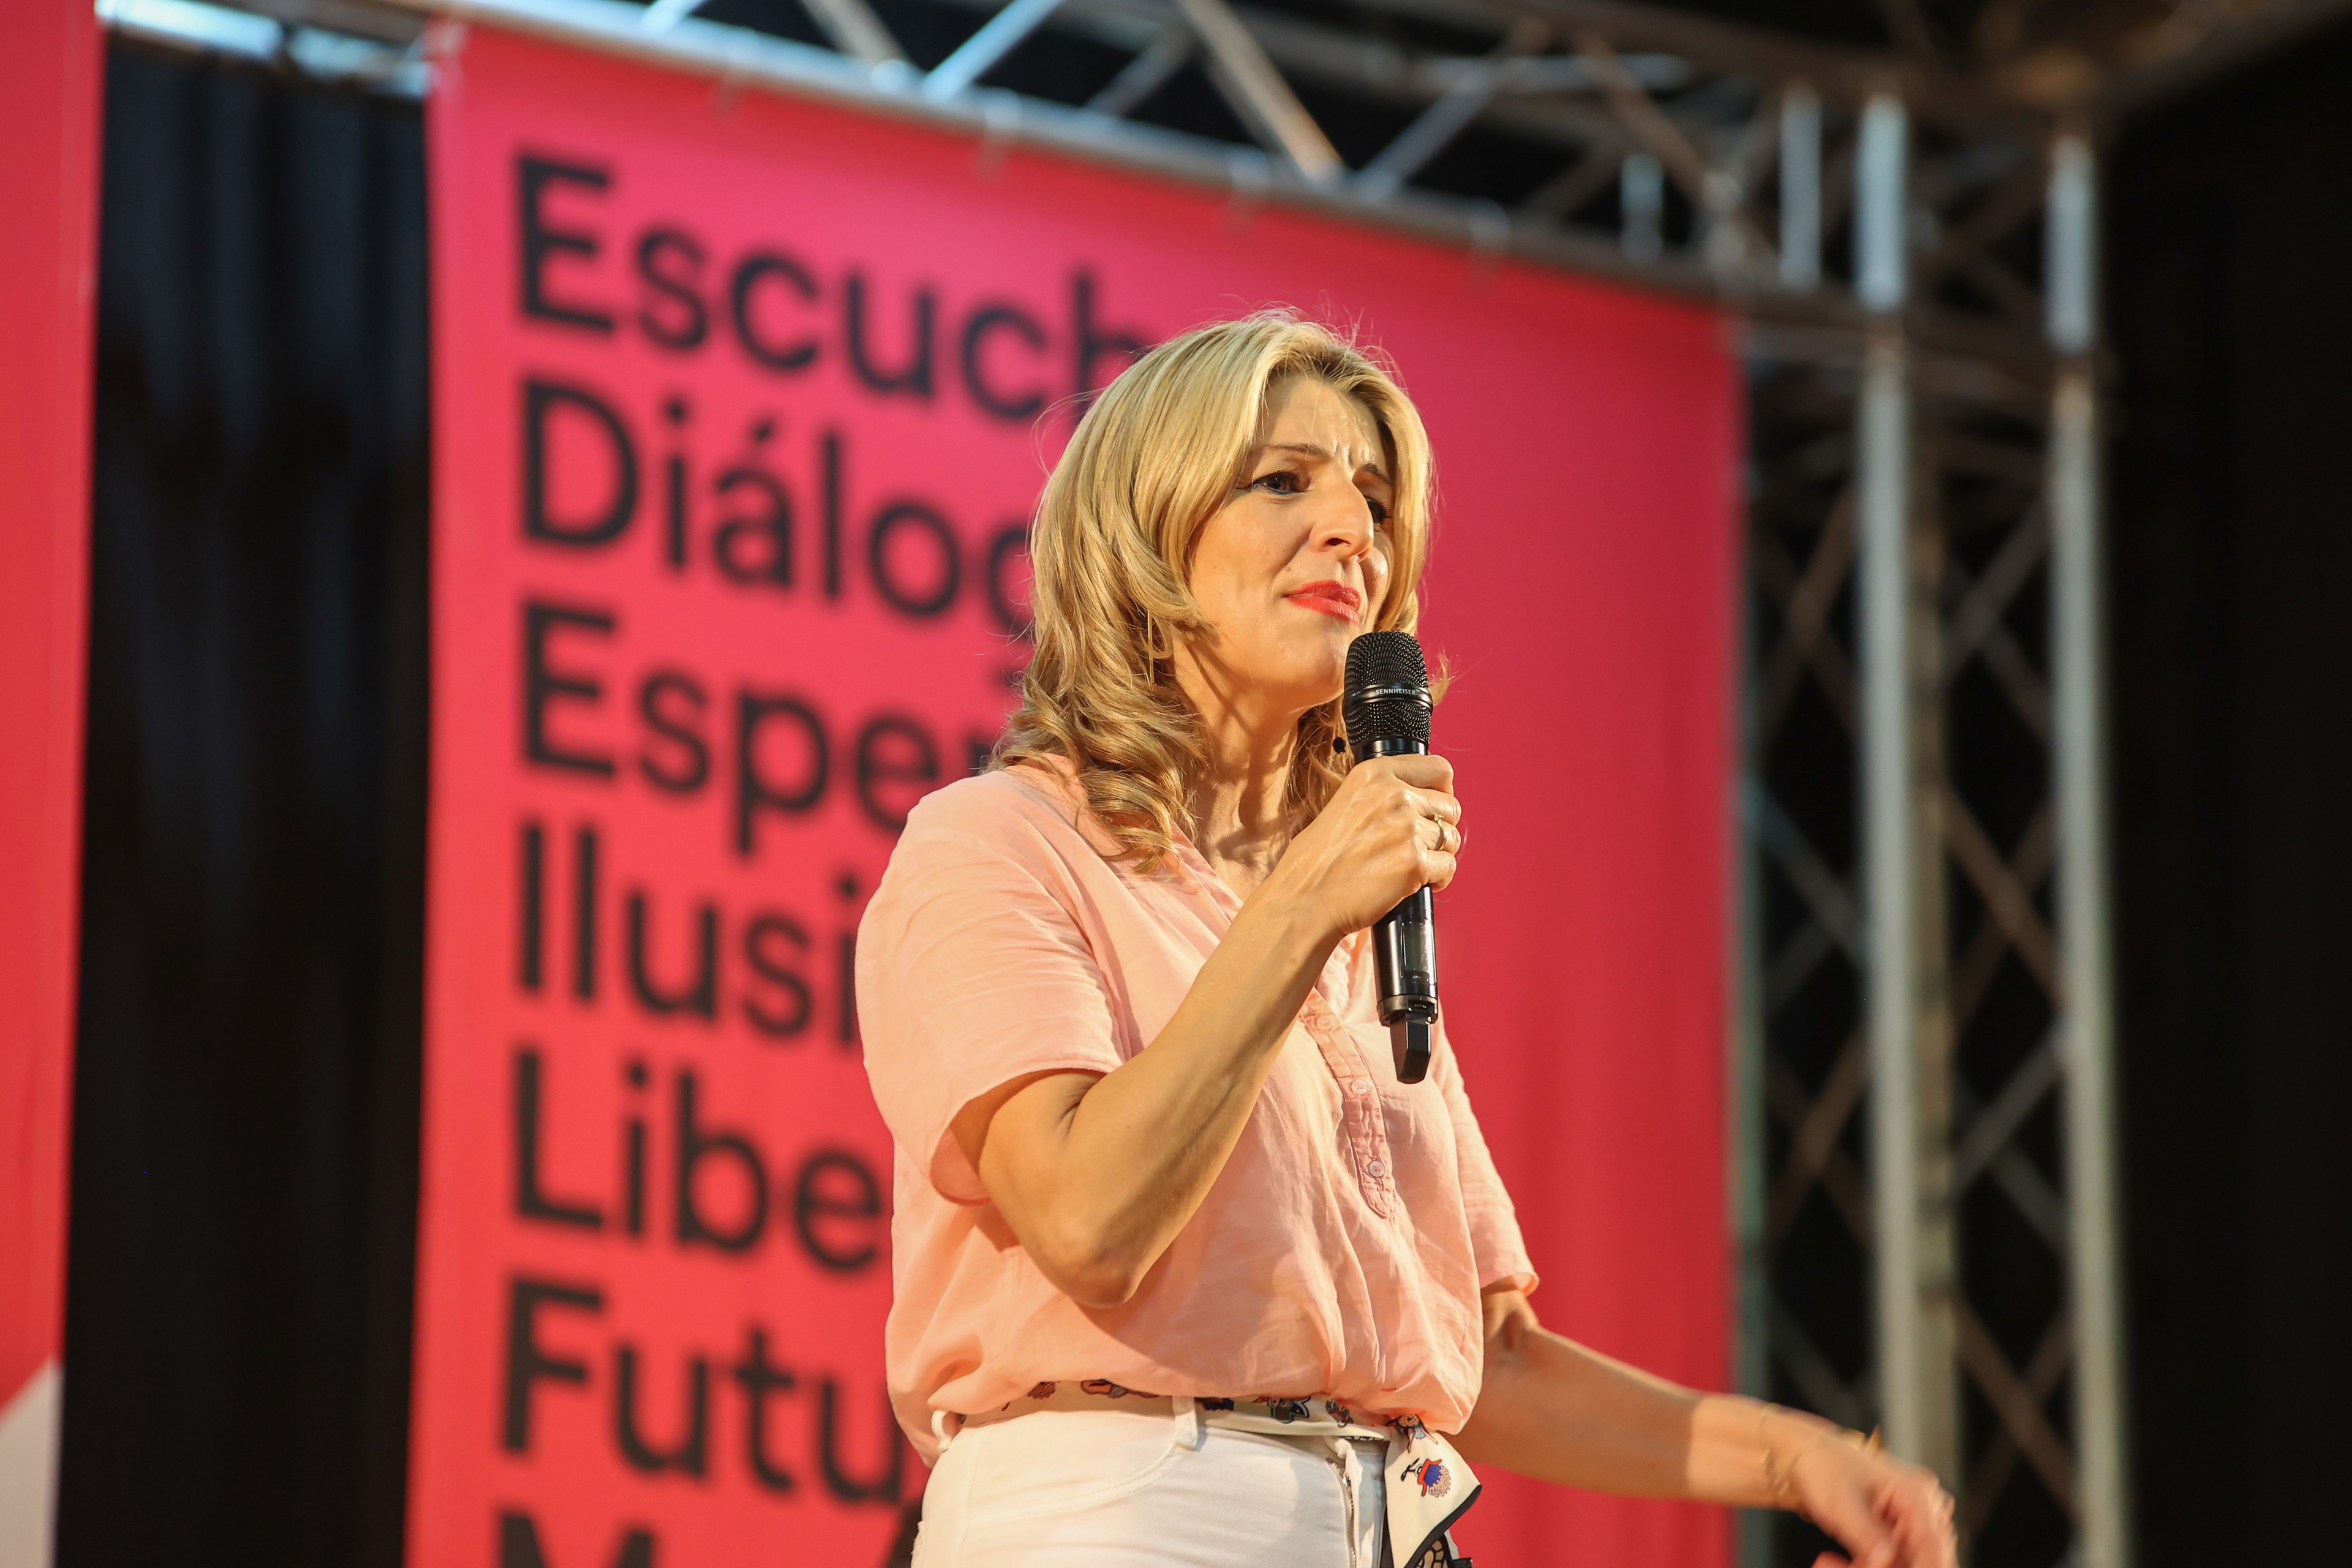 La vicepresidenta segunda del Gobierno y ministra de Trabajo, Yolanda Díaz, durante un acto de escucha de su proyecto Sumar, en el Círculo Mercantil, a 25 de marzo de 2023, en Las Palmas de Gran Canaria, Gran Canaria, Canarias, (España).